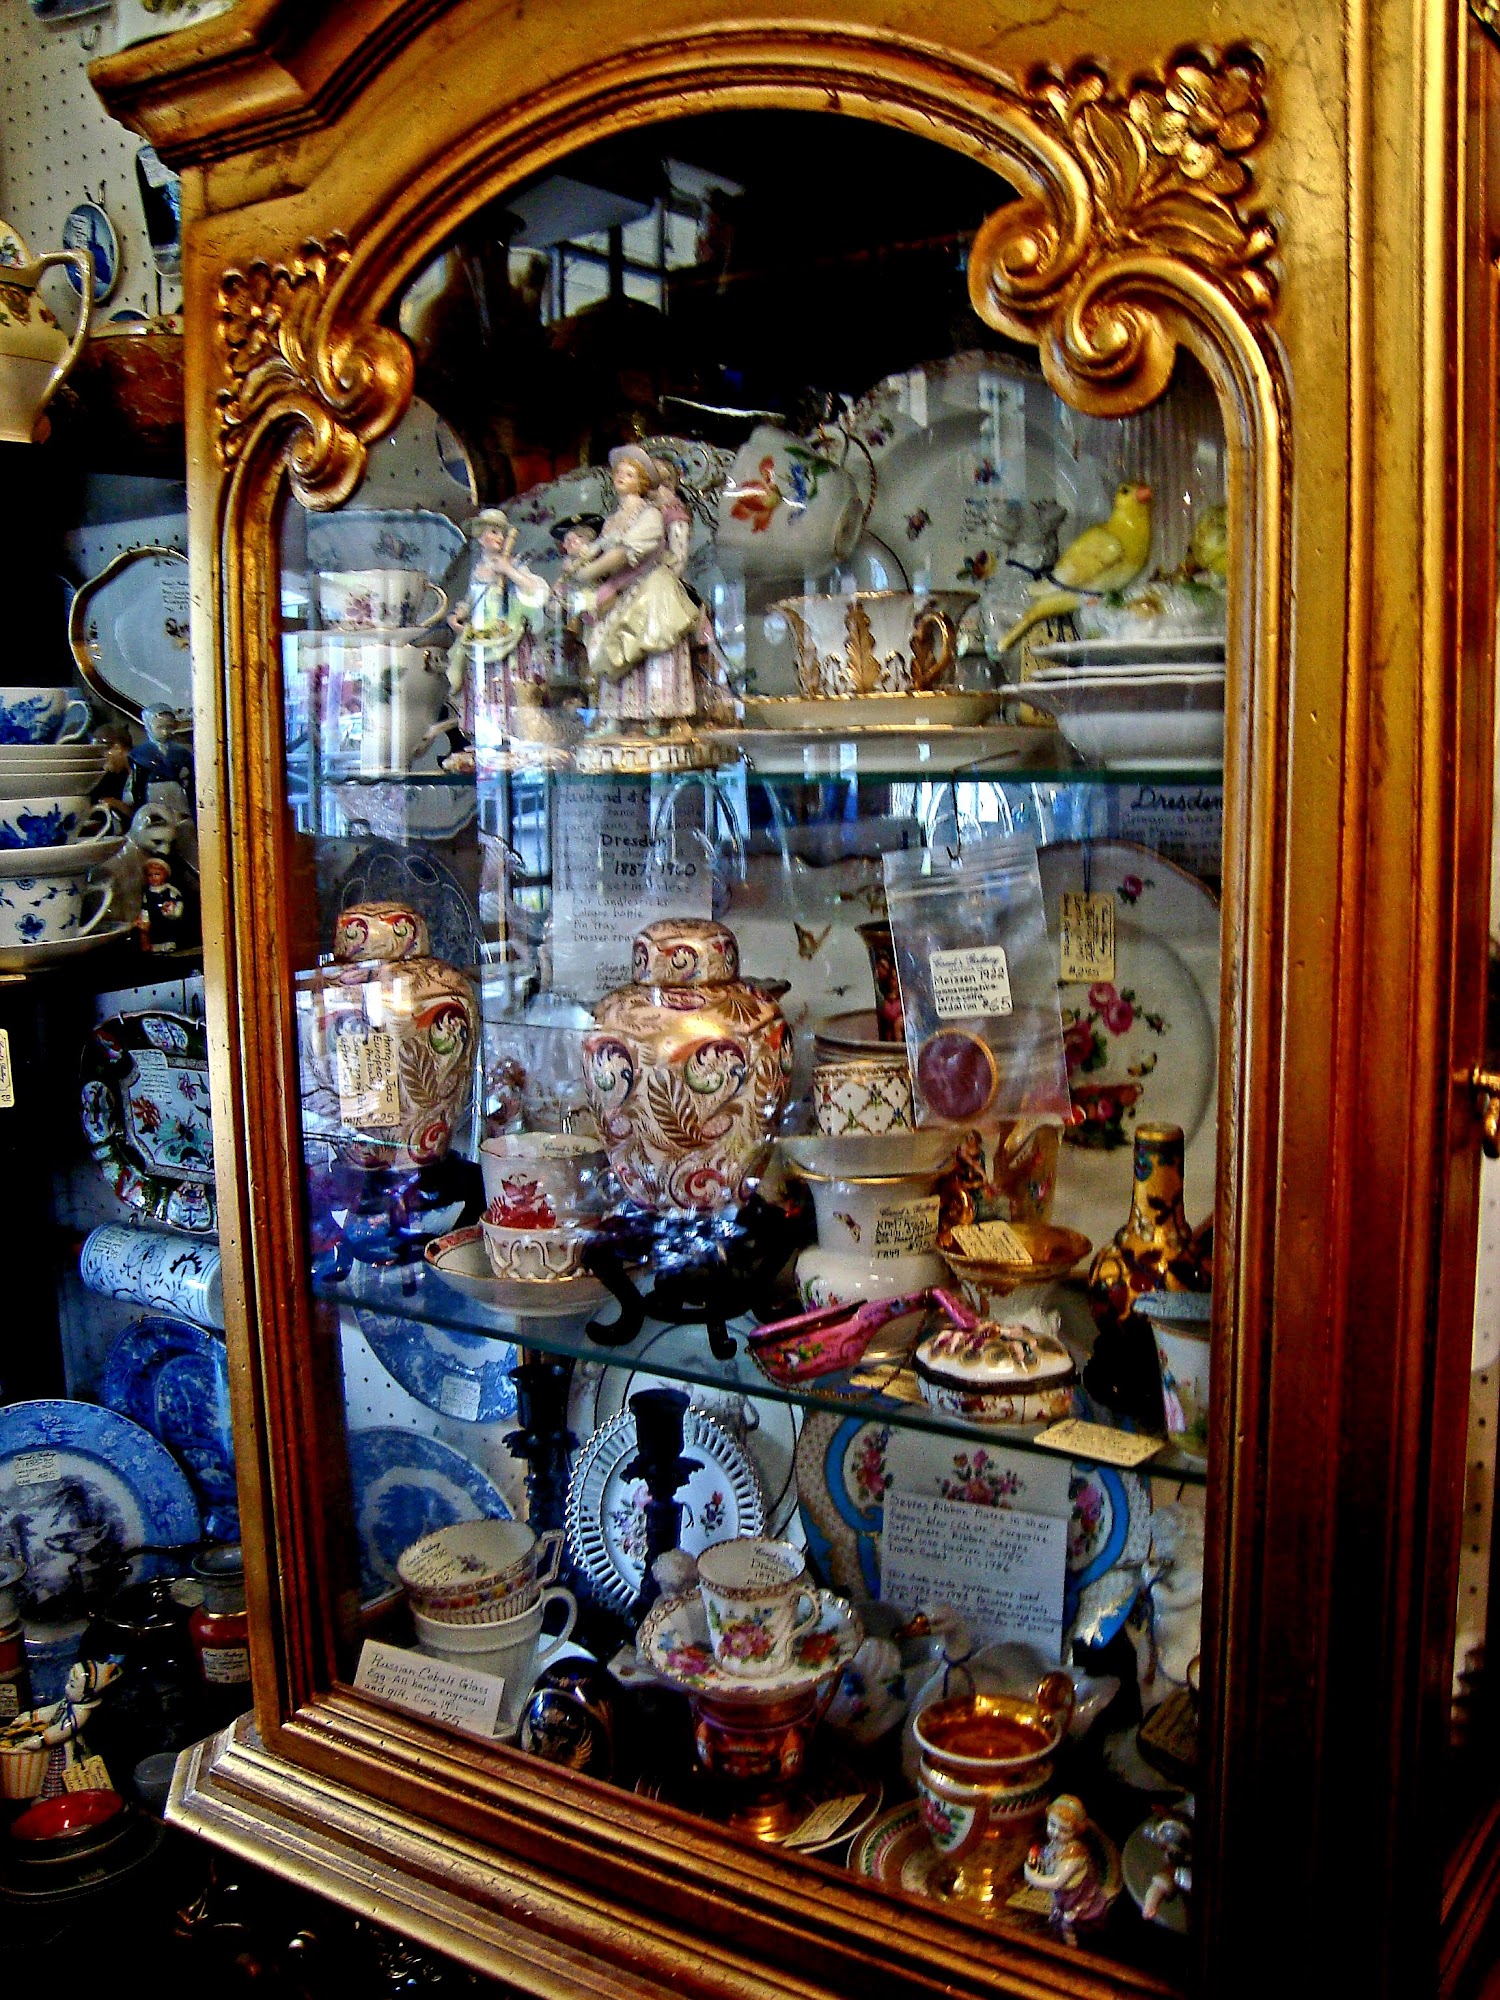 Carol's Antique Gallery